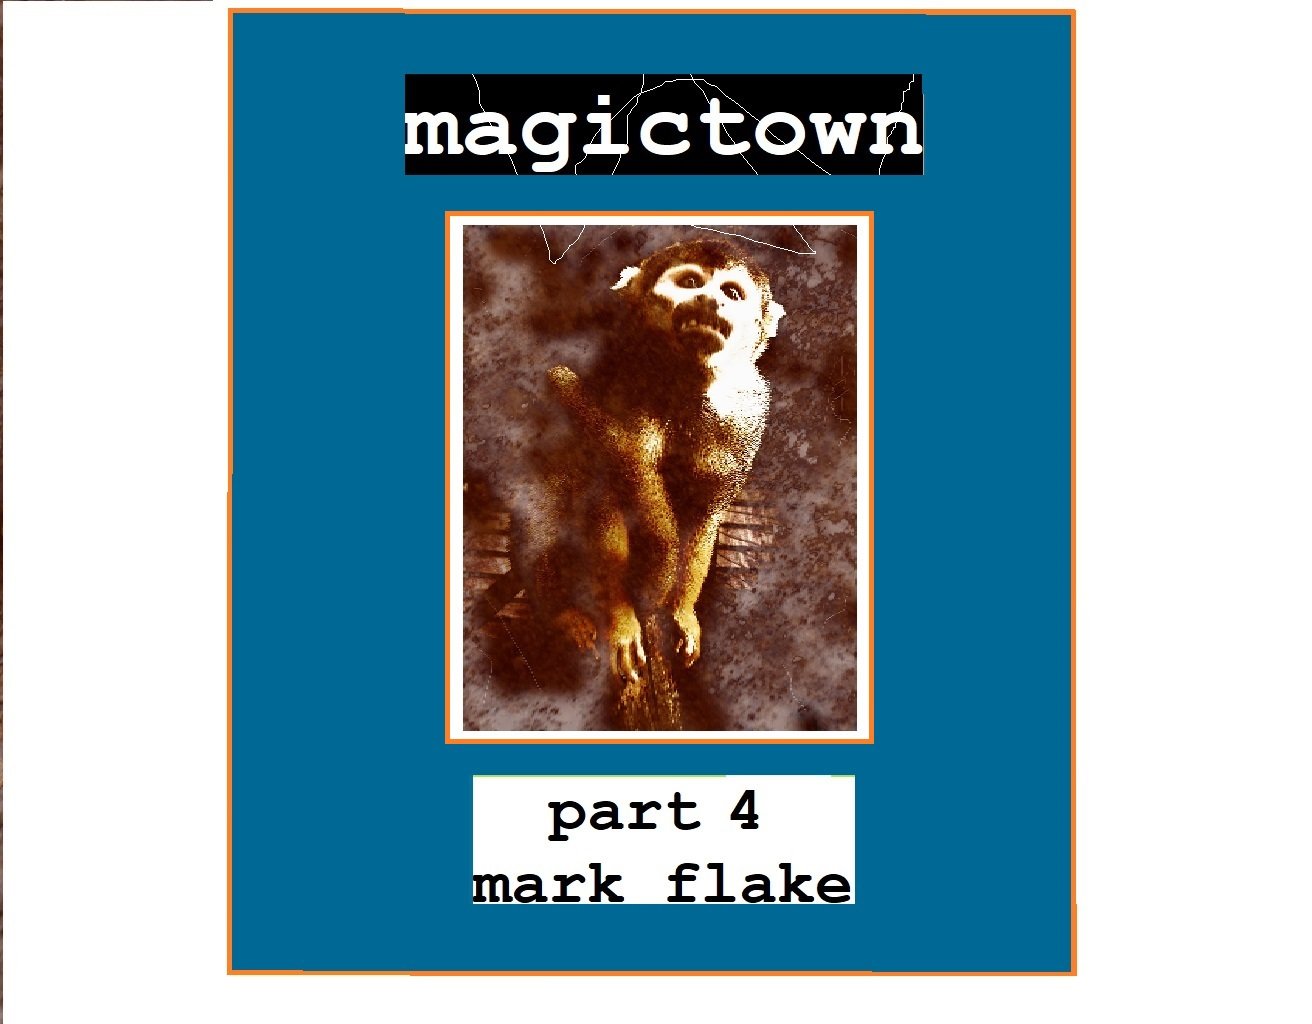 magictown pt. 4